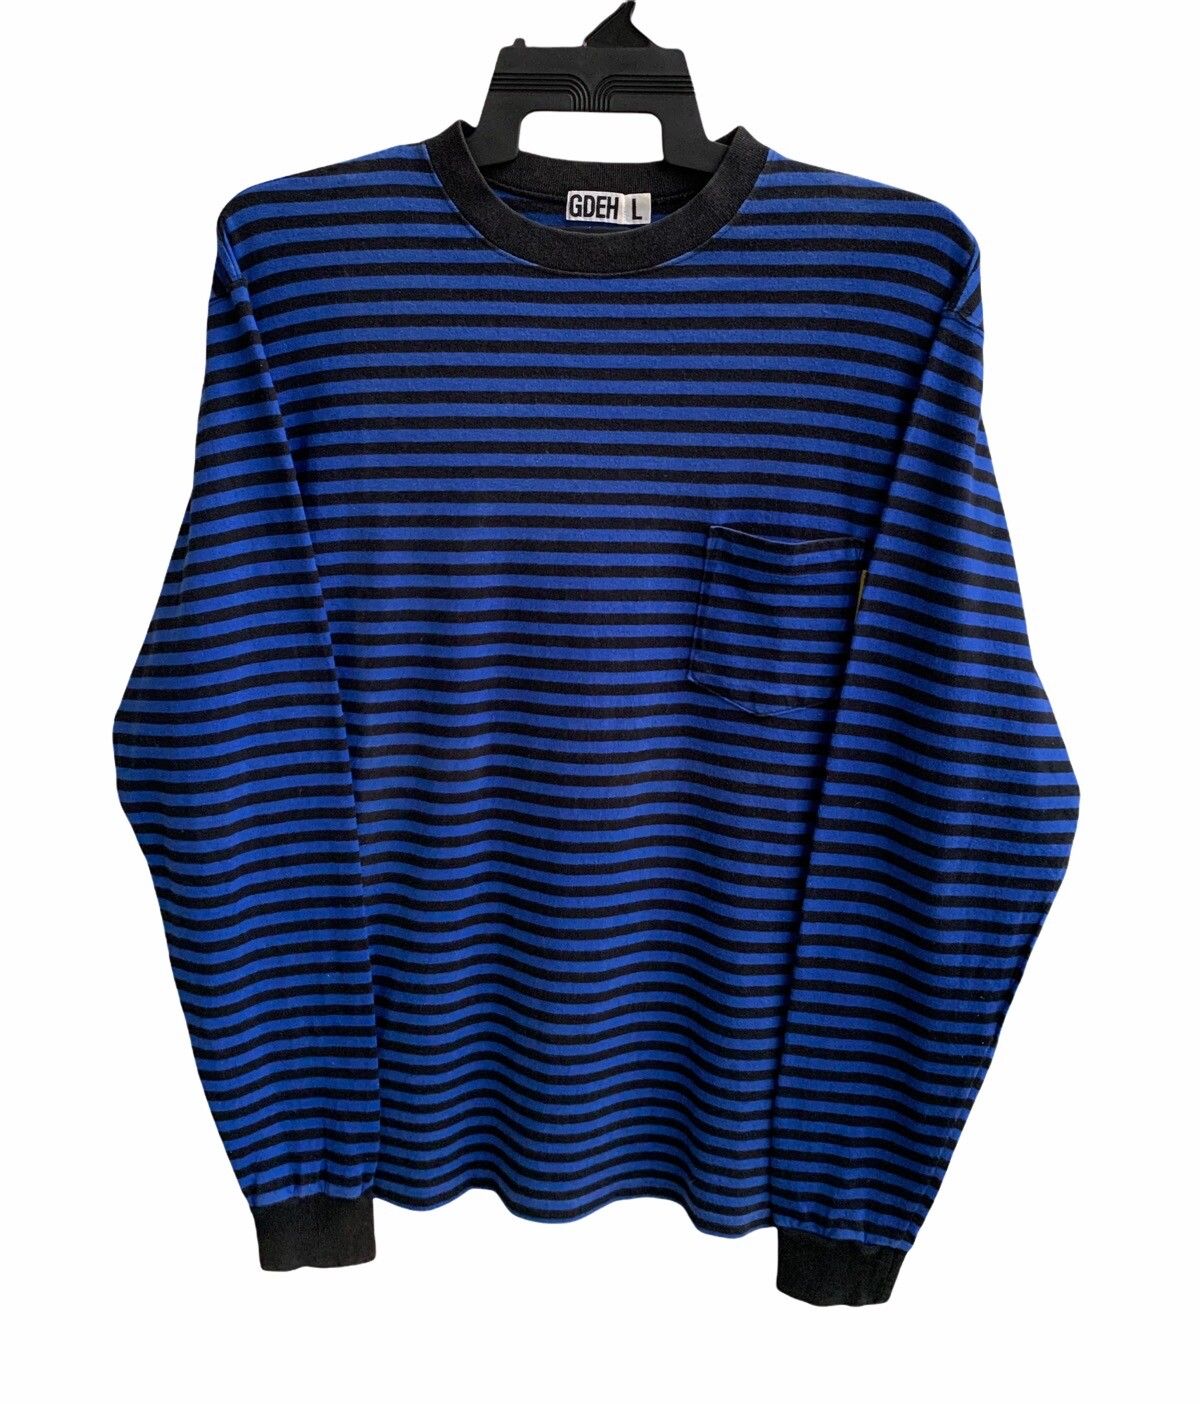 Goodenough Vinateg Good Enough Blue Striped Long Sleeve T-shirts Size US L / EU 52-54 / 3 - 2 Preview